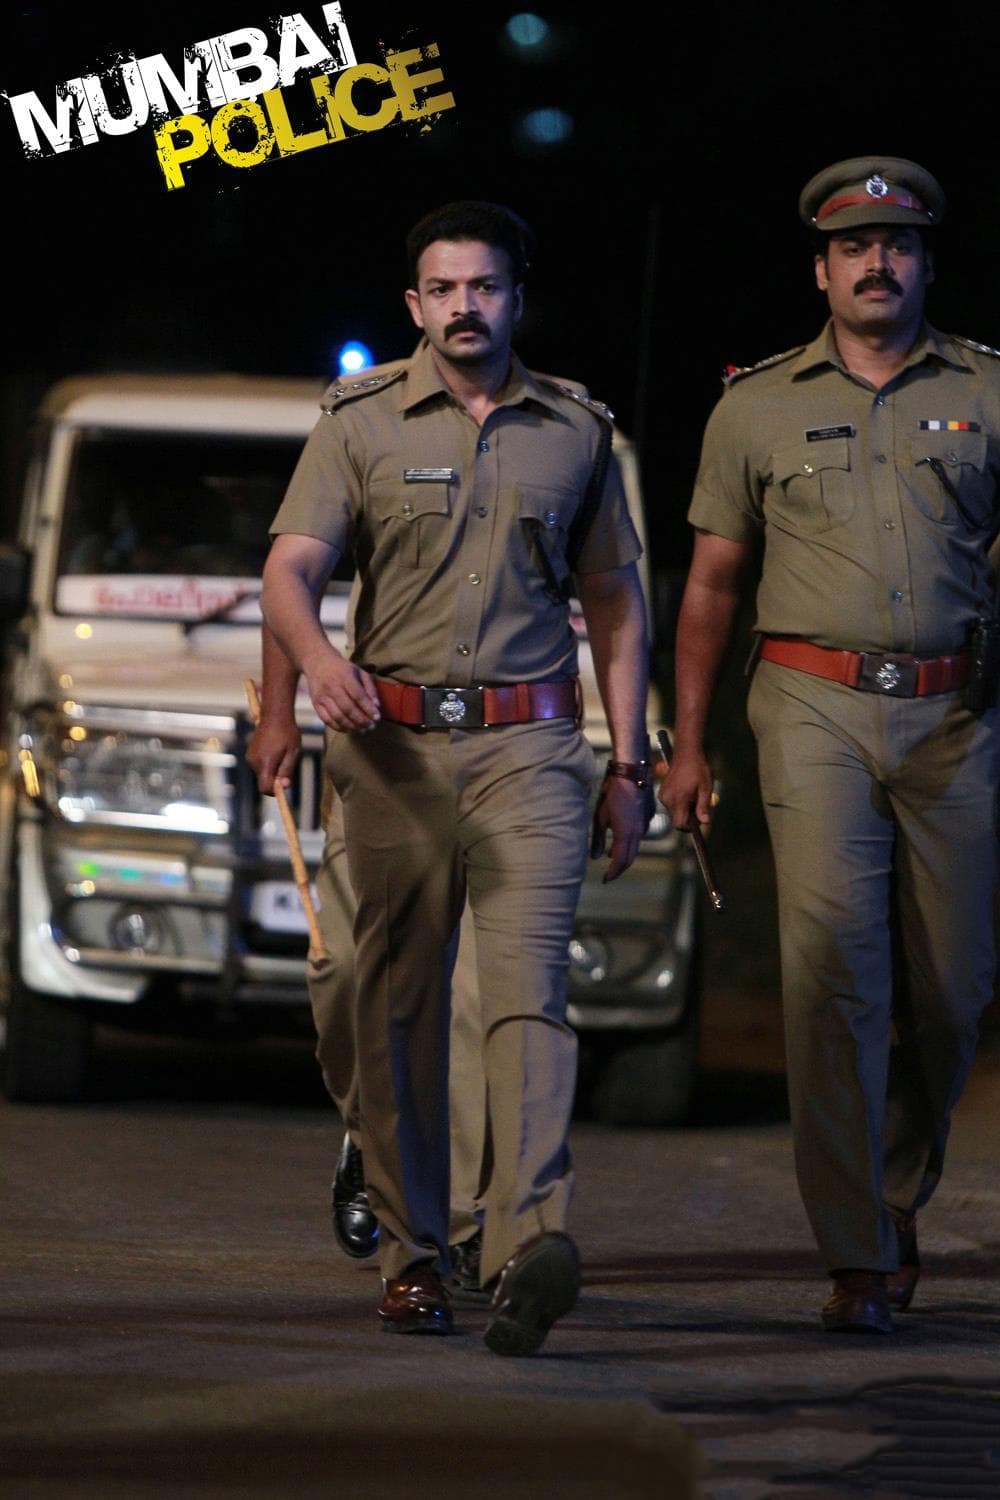 پلیس بمبئی (Mumbai Police)